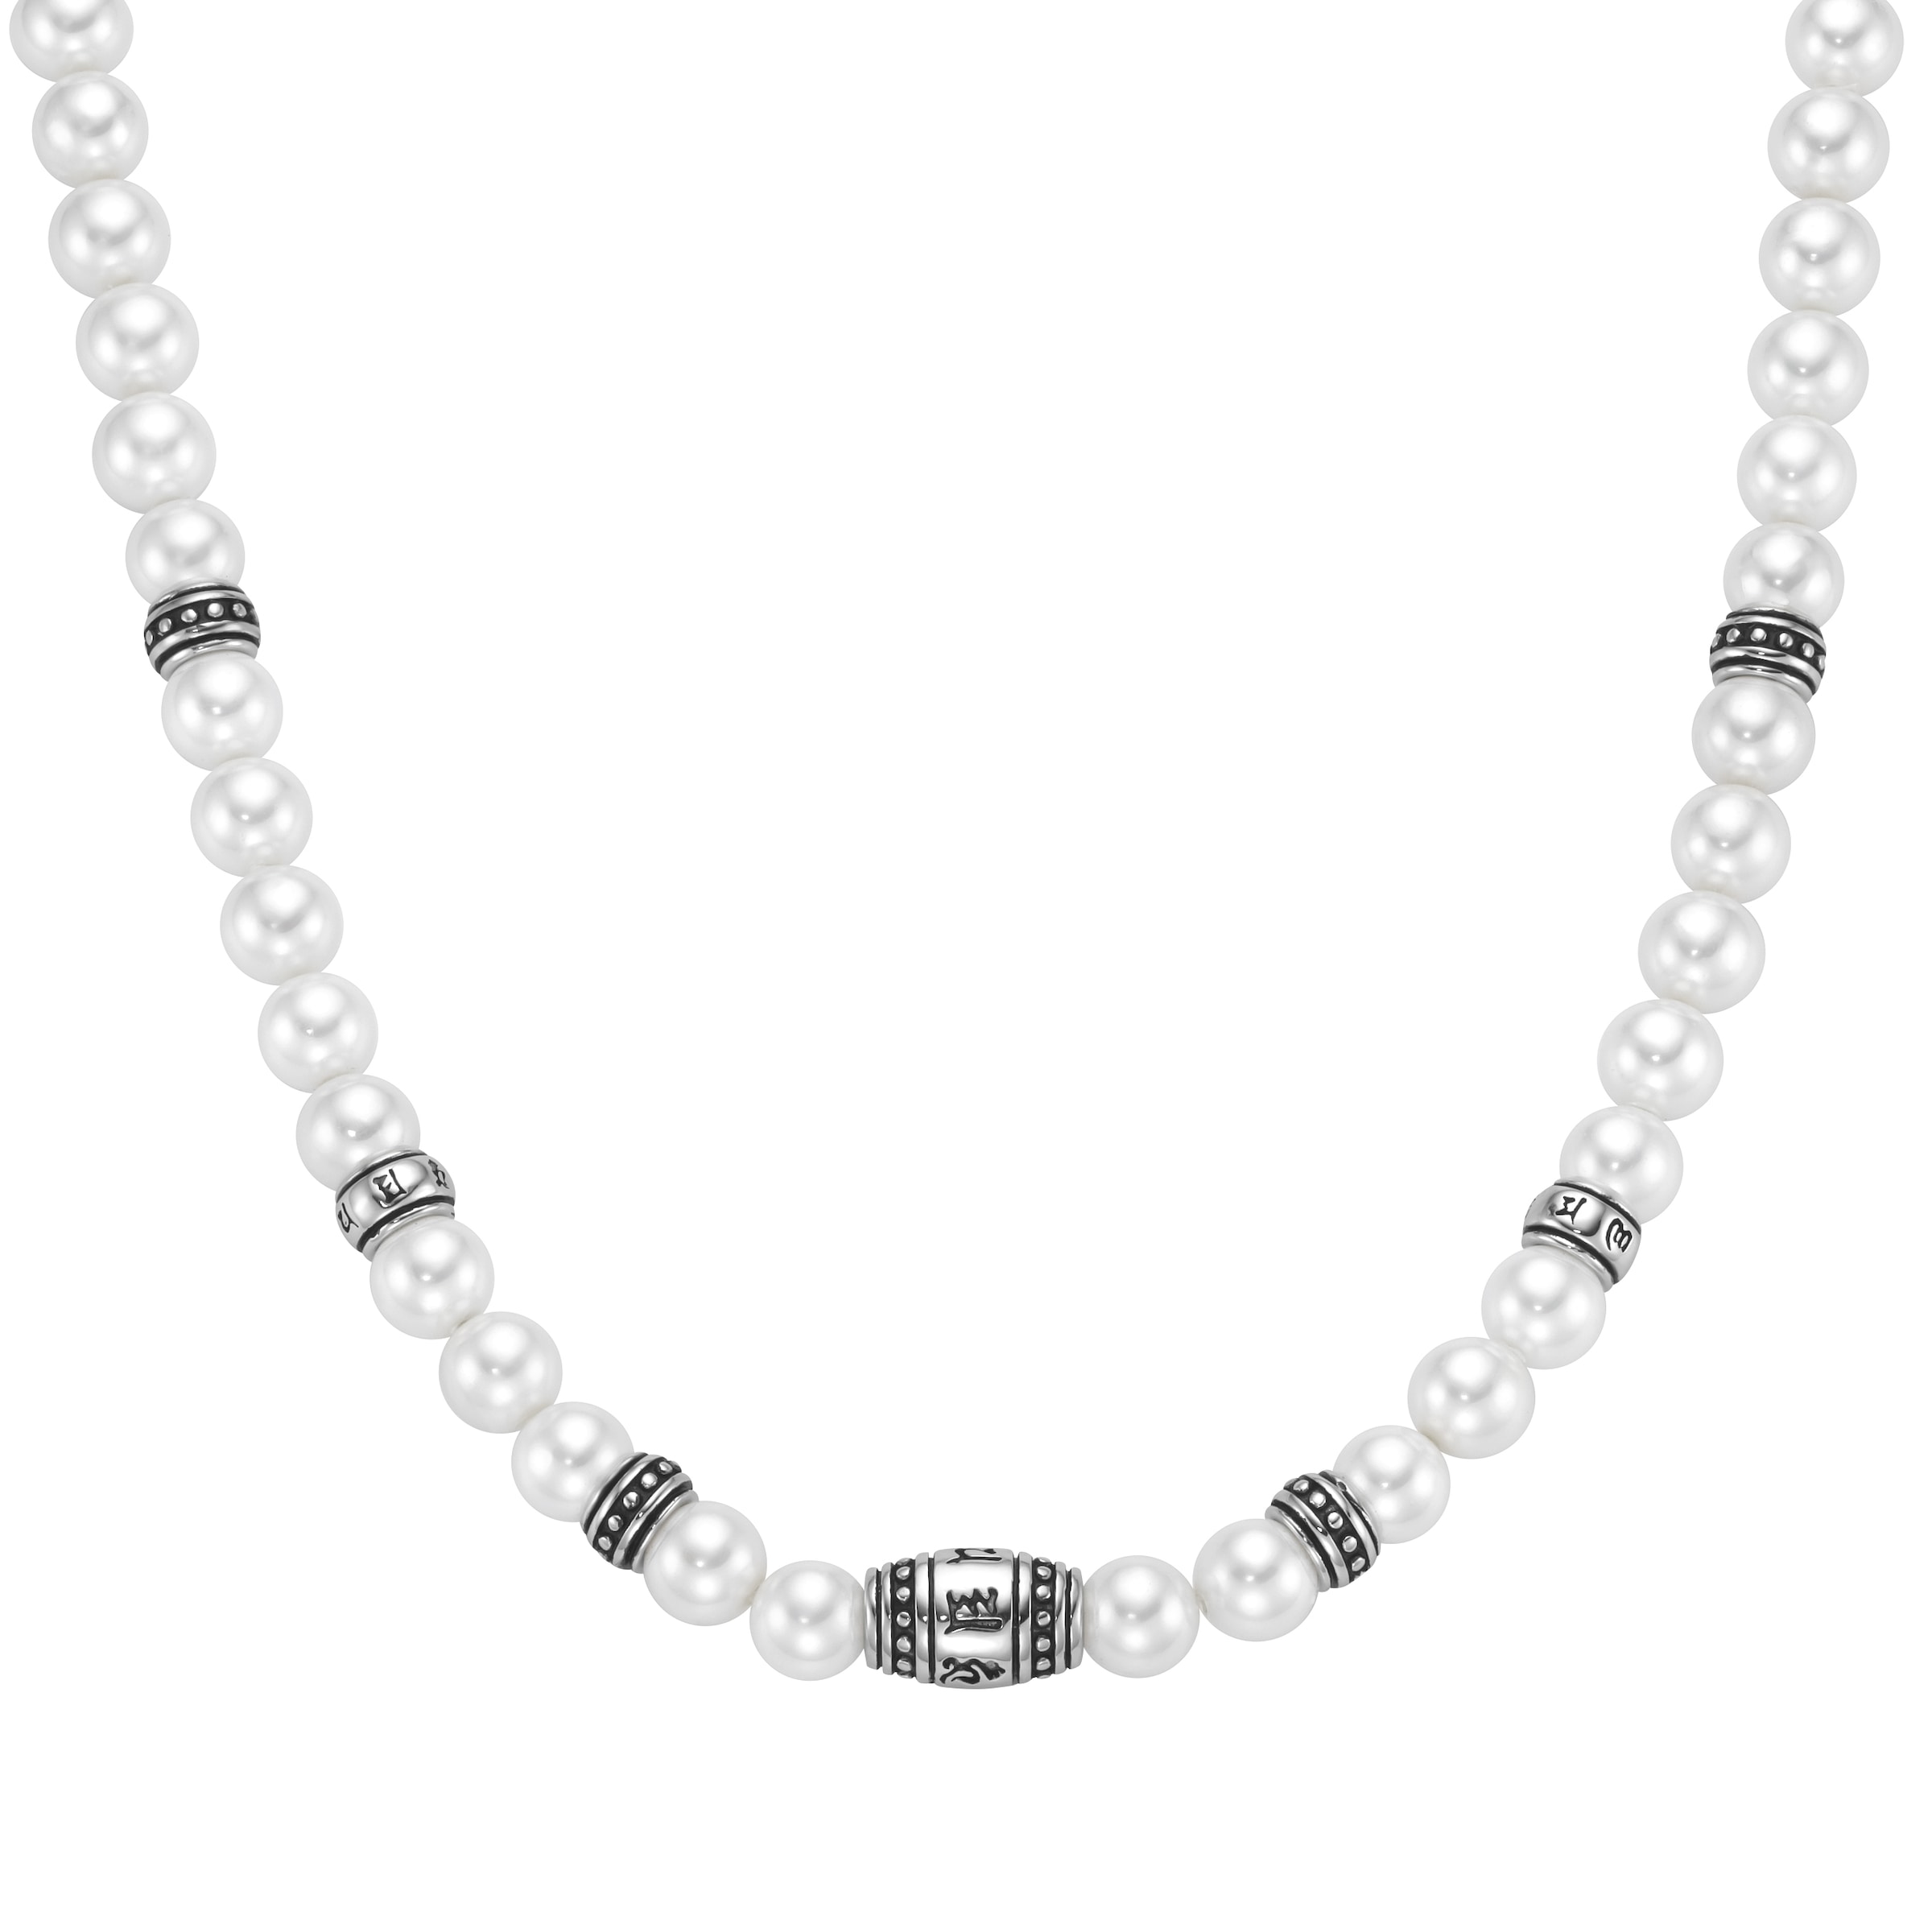 Collier »Collier mit weißen Muschelkern-Perlen, Silber 925«